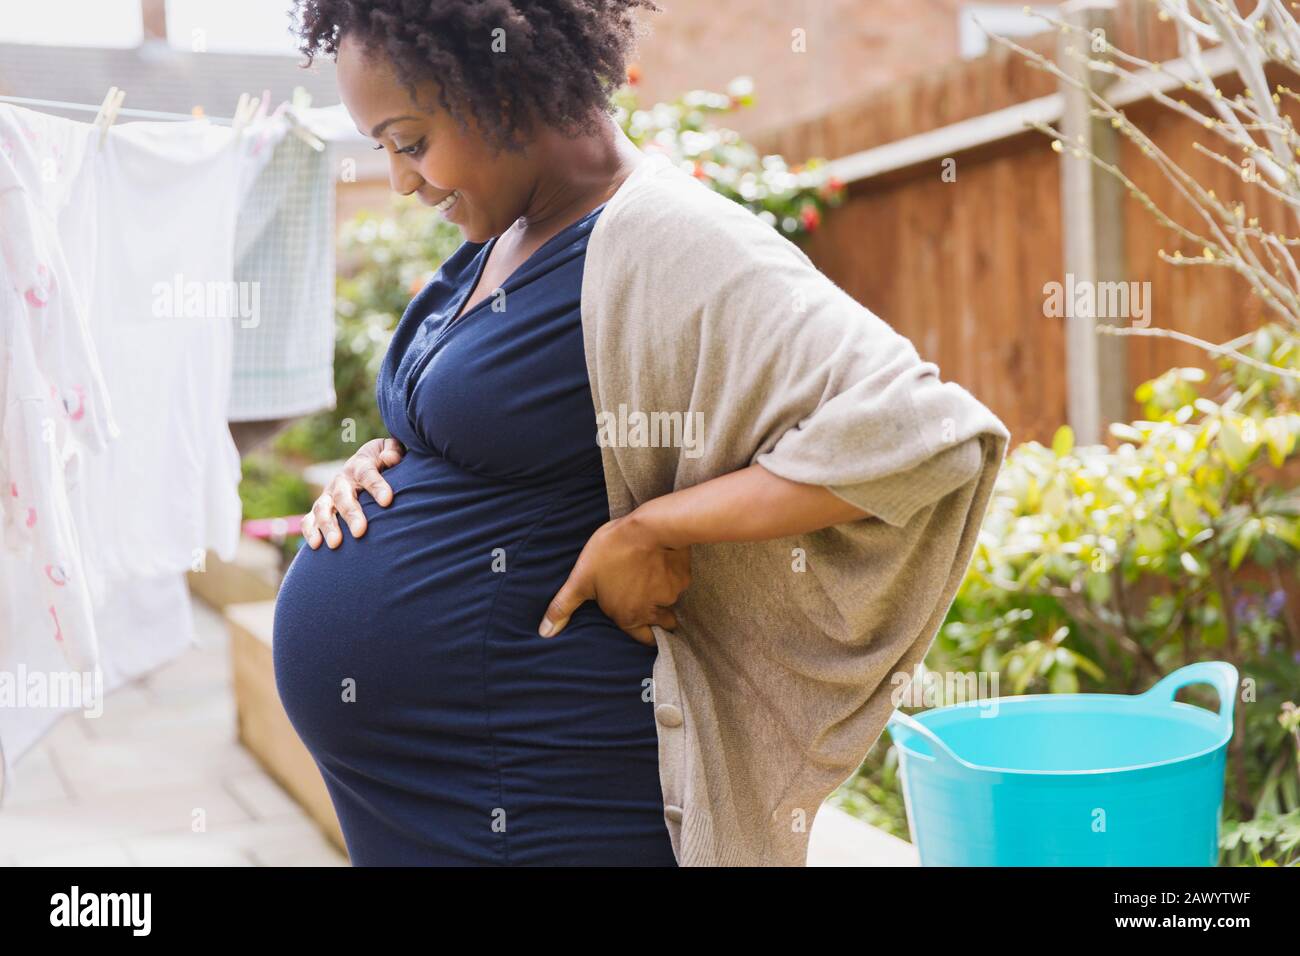 Glückliche schwangere Frau hängend Wäsche auf Wäscheleine Stockfoto